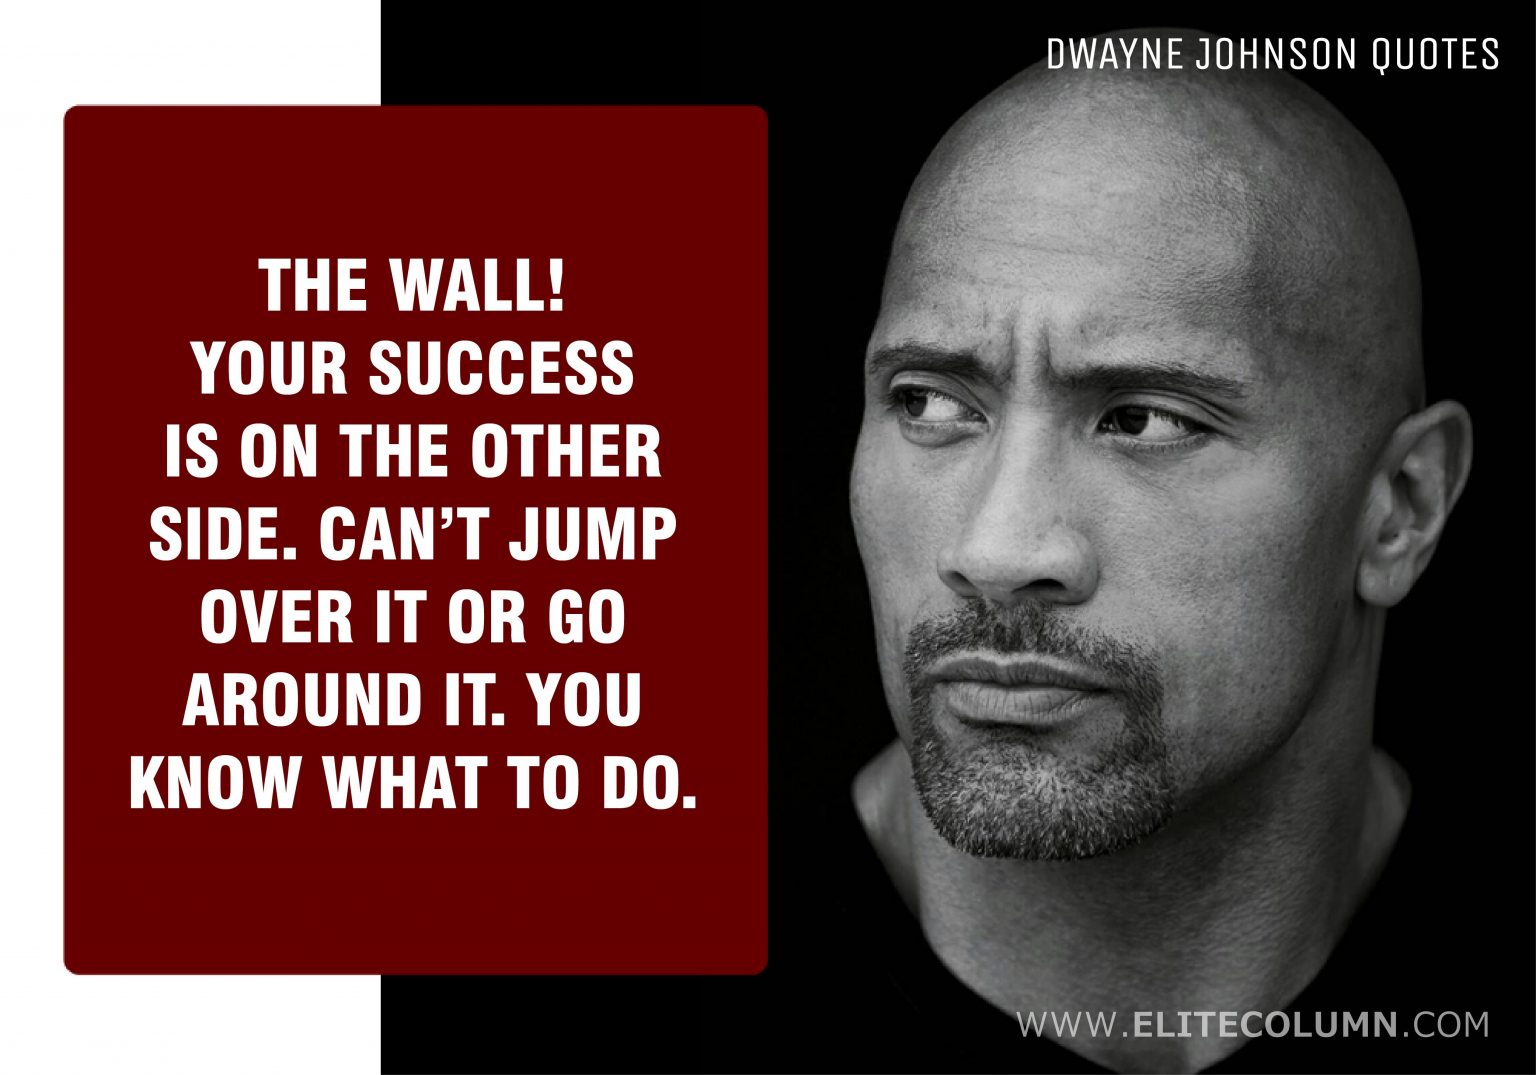 46 Dwayne Johnson Quotes That Will Motivate You 2021 Elitecolumn